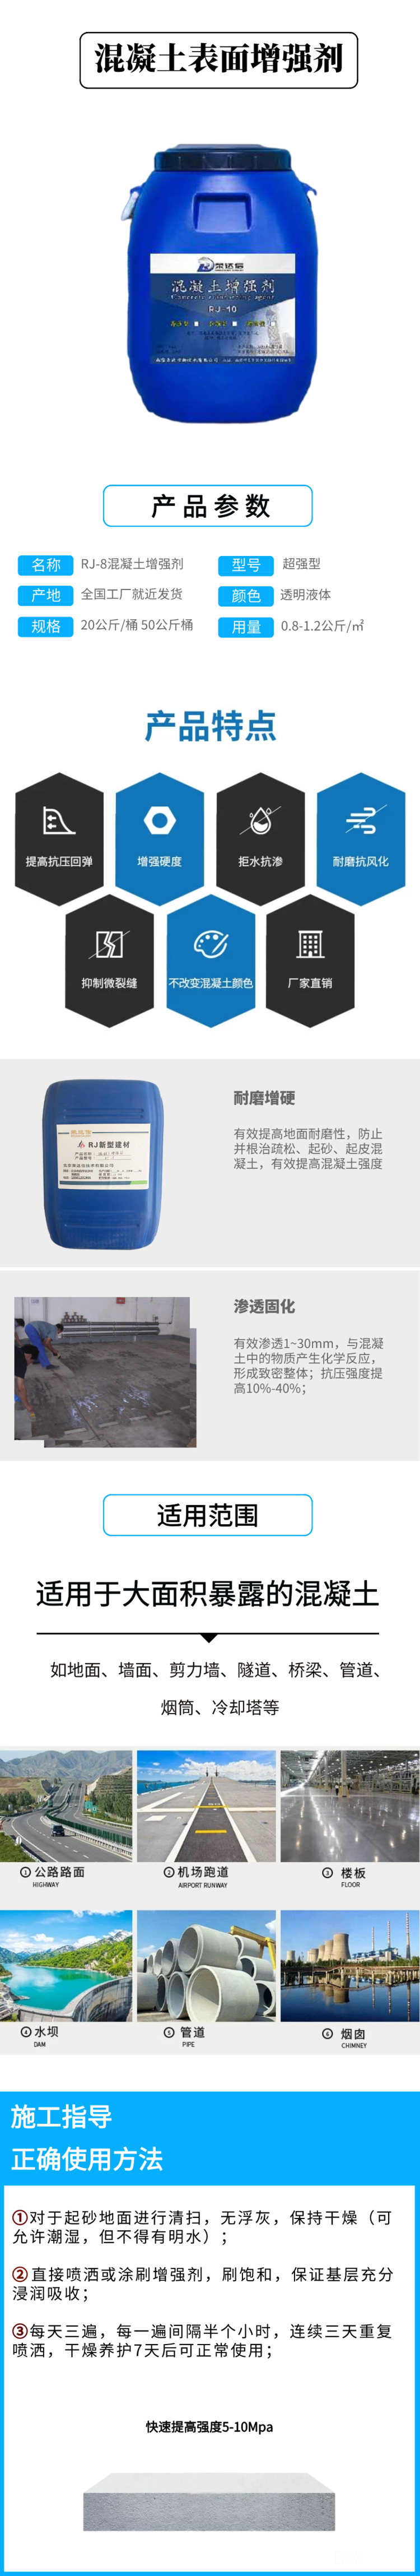 混凝土表面增强剂  混凝土增强剂  提高混凝土表面强度等级  北京荣达信示例图11